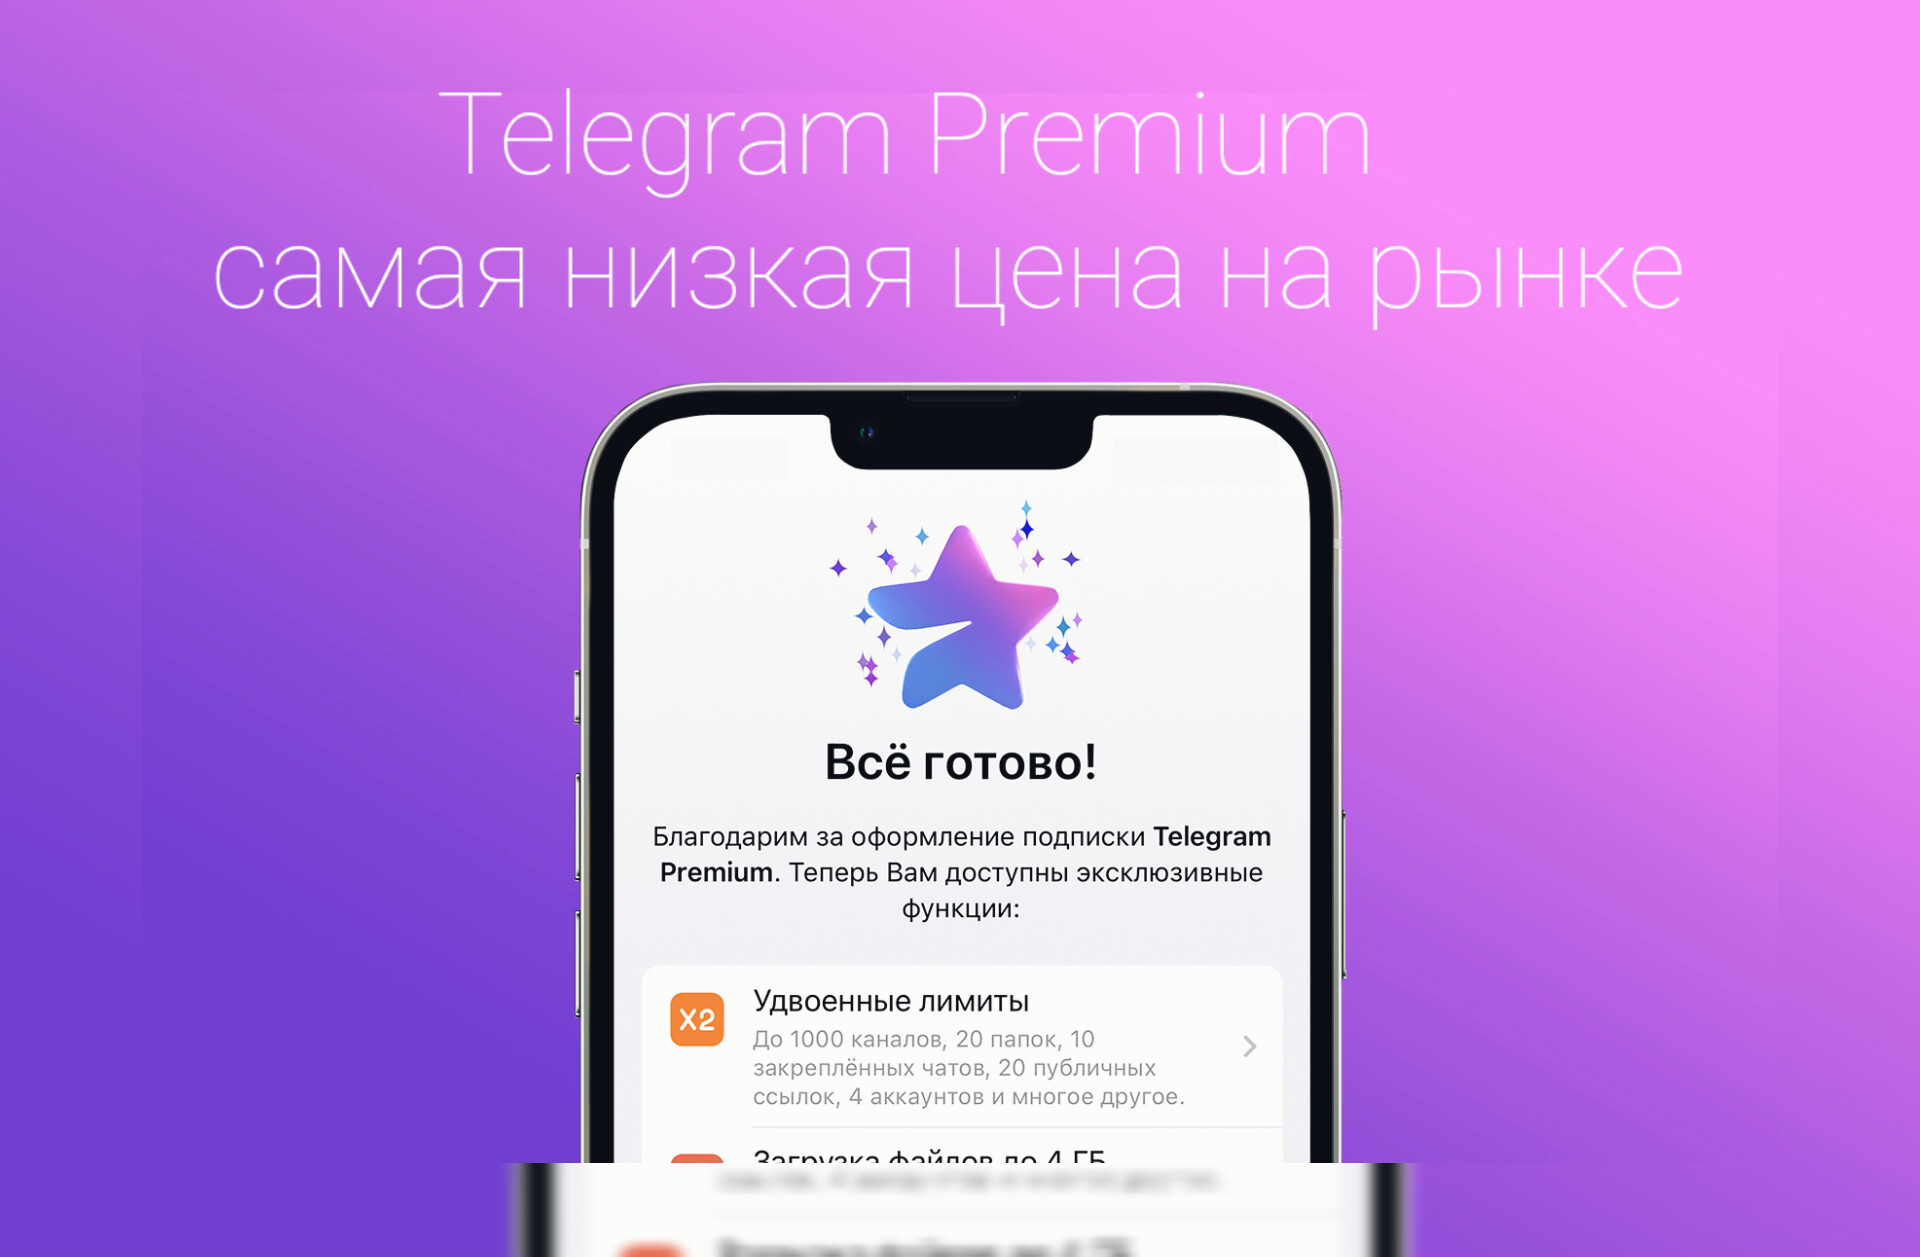 Купить тг канал с живыми. Телеграм премиум. Премиум подписка телеграм. Платная подписка в телеграм. Telegram Premium Premium.